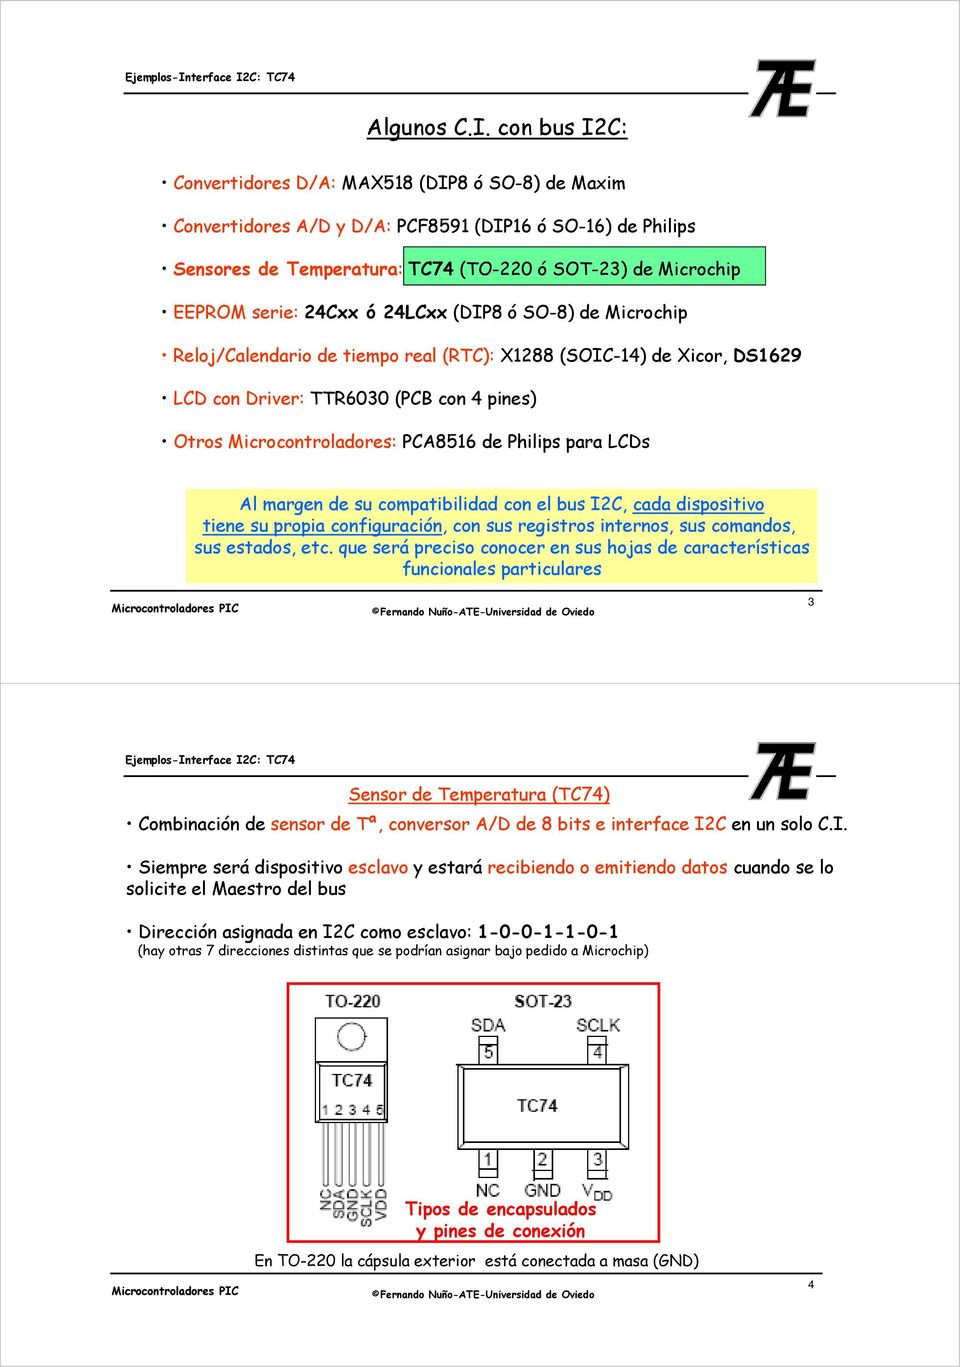 24Cxx ó 24LCxx (DIP8 ó SO-8) de Microchip Reloj/Calendario de tiempo real (RTC): X1288 (SOIC-14) de Xicor, DS1629 LCD con Driver: TTR6030 (PCB con 4 pines) Otros Microcontroladores: PCA8516 de